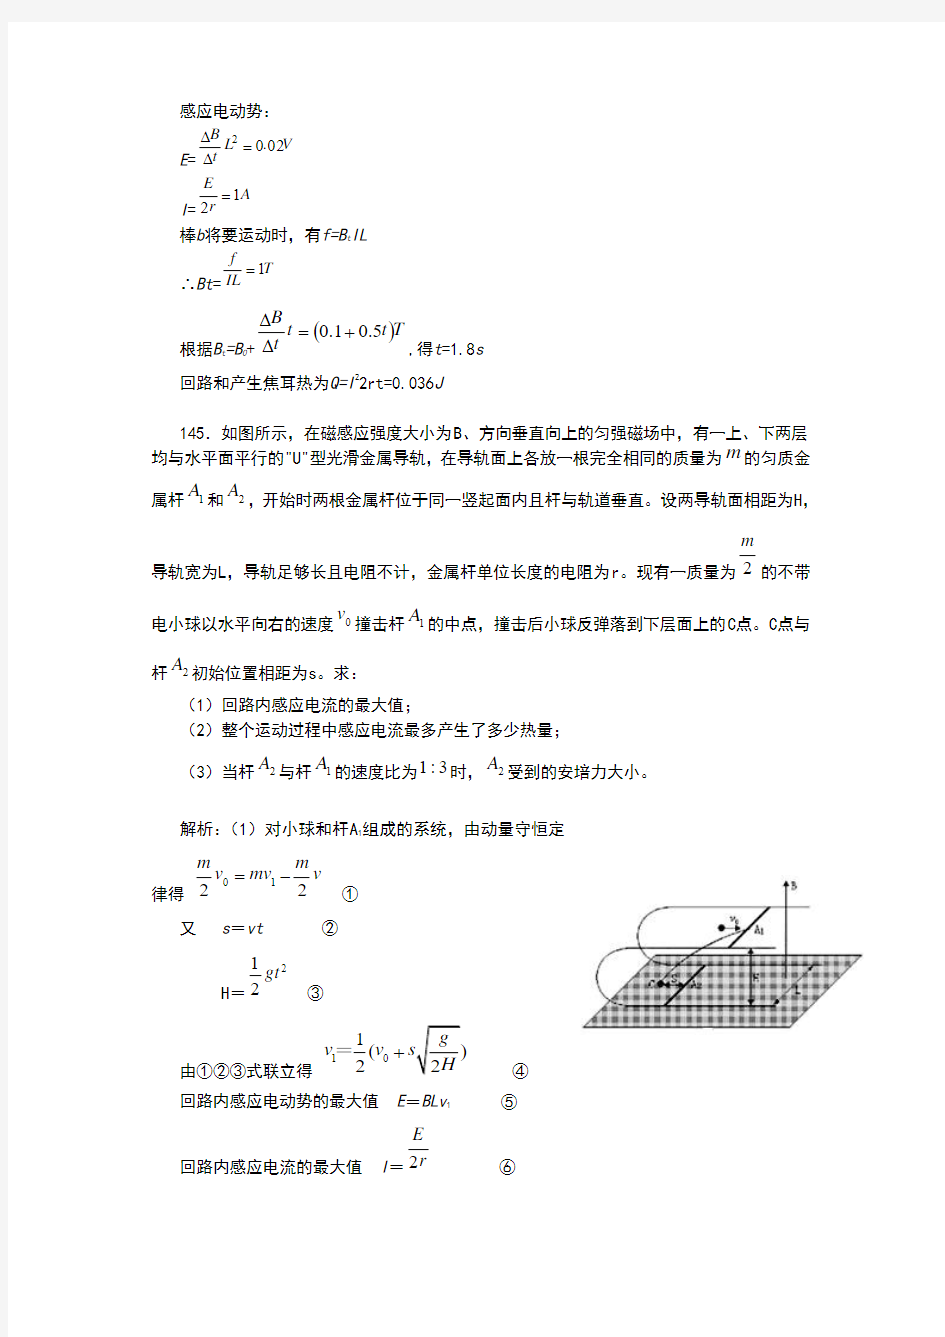 高考物理经典考题300道(5)